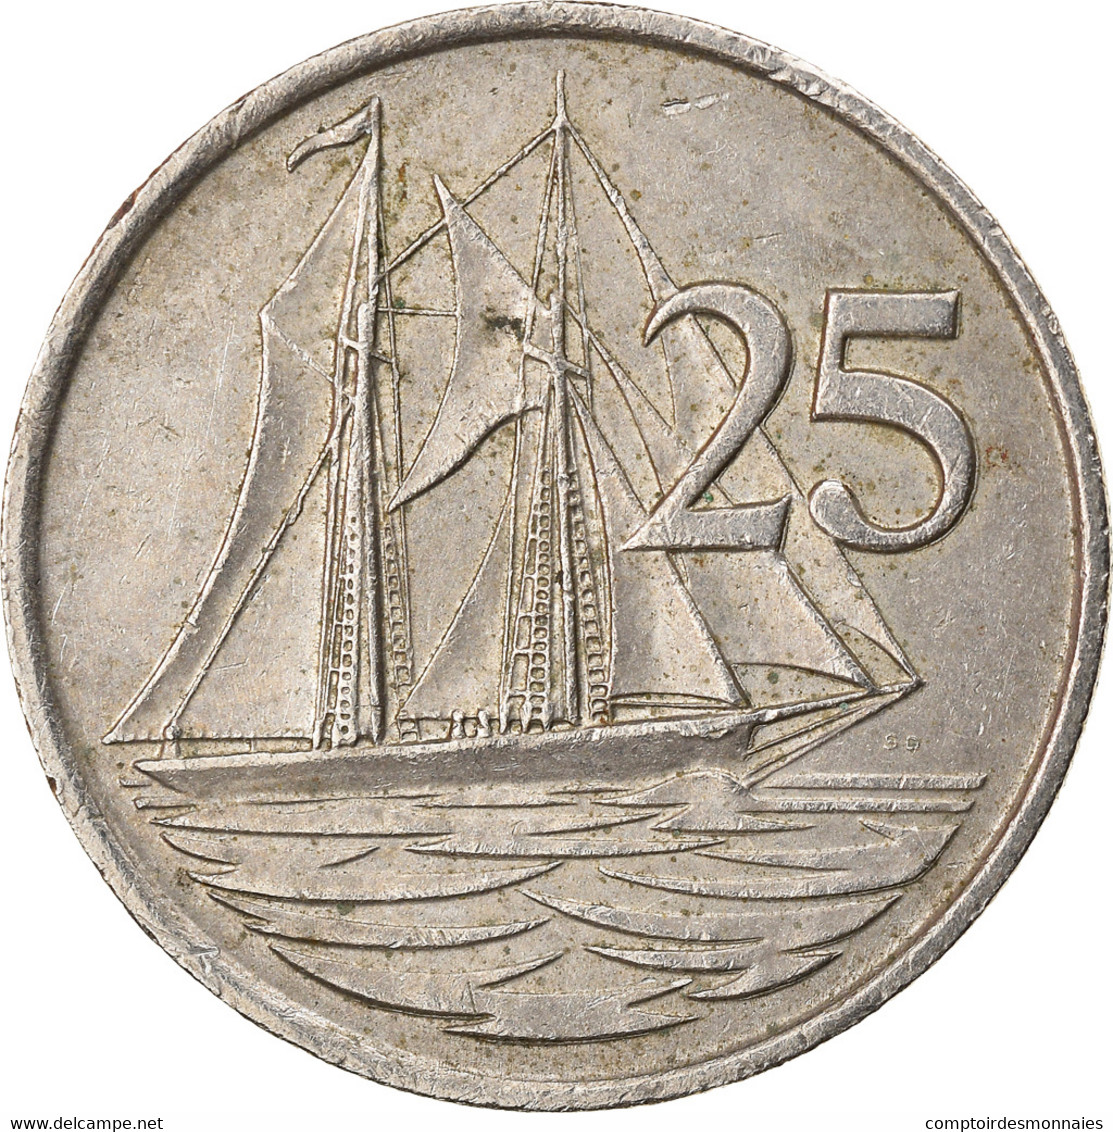 Monnaie, Îles Caïmans, 25 Cents, 1987, TTB, Copper-nickel, KM:90 - Cayman (Isole)